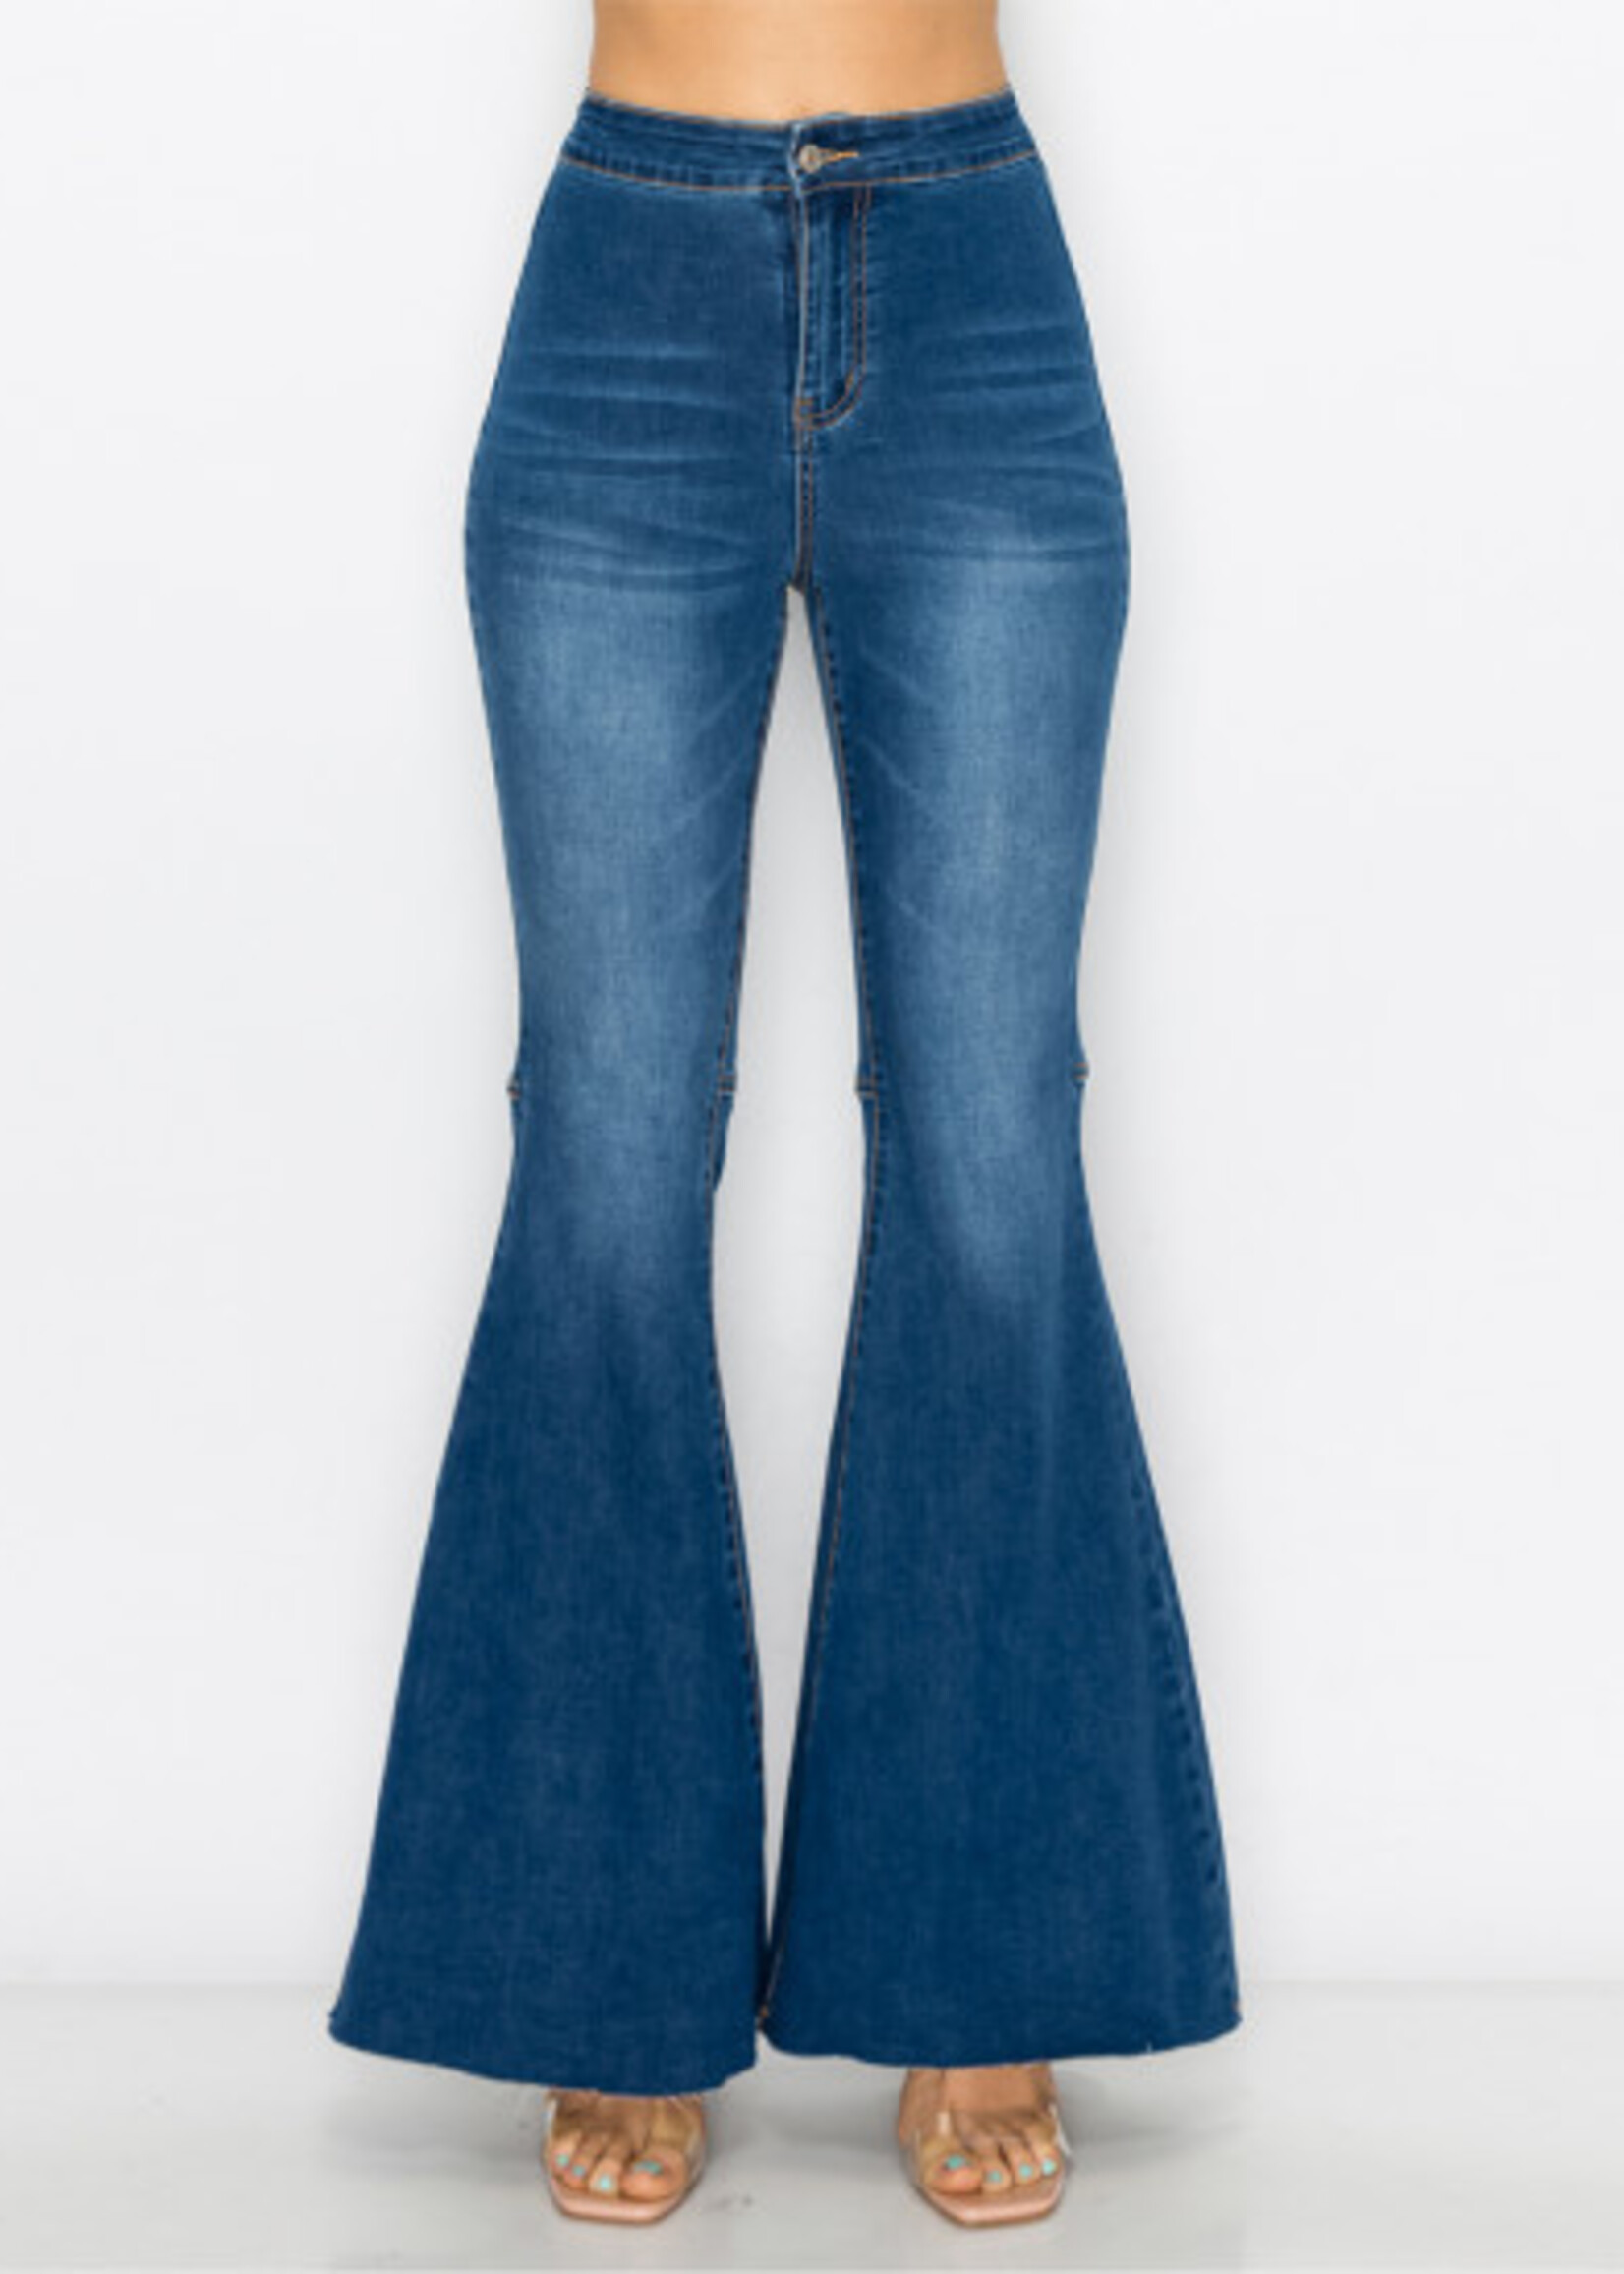 Women's Denim, Designer Jeans for Women